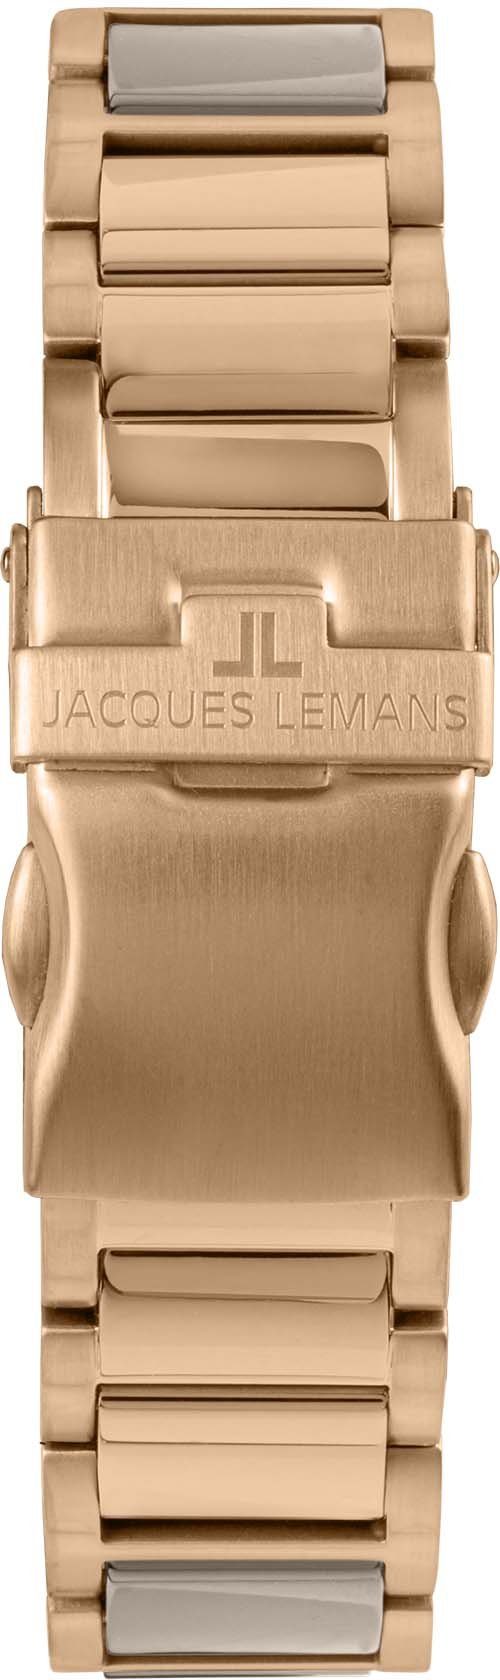 Keramikuhr Lemans Liverpool, 42-12M beige Jacques